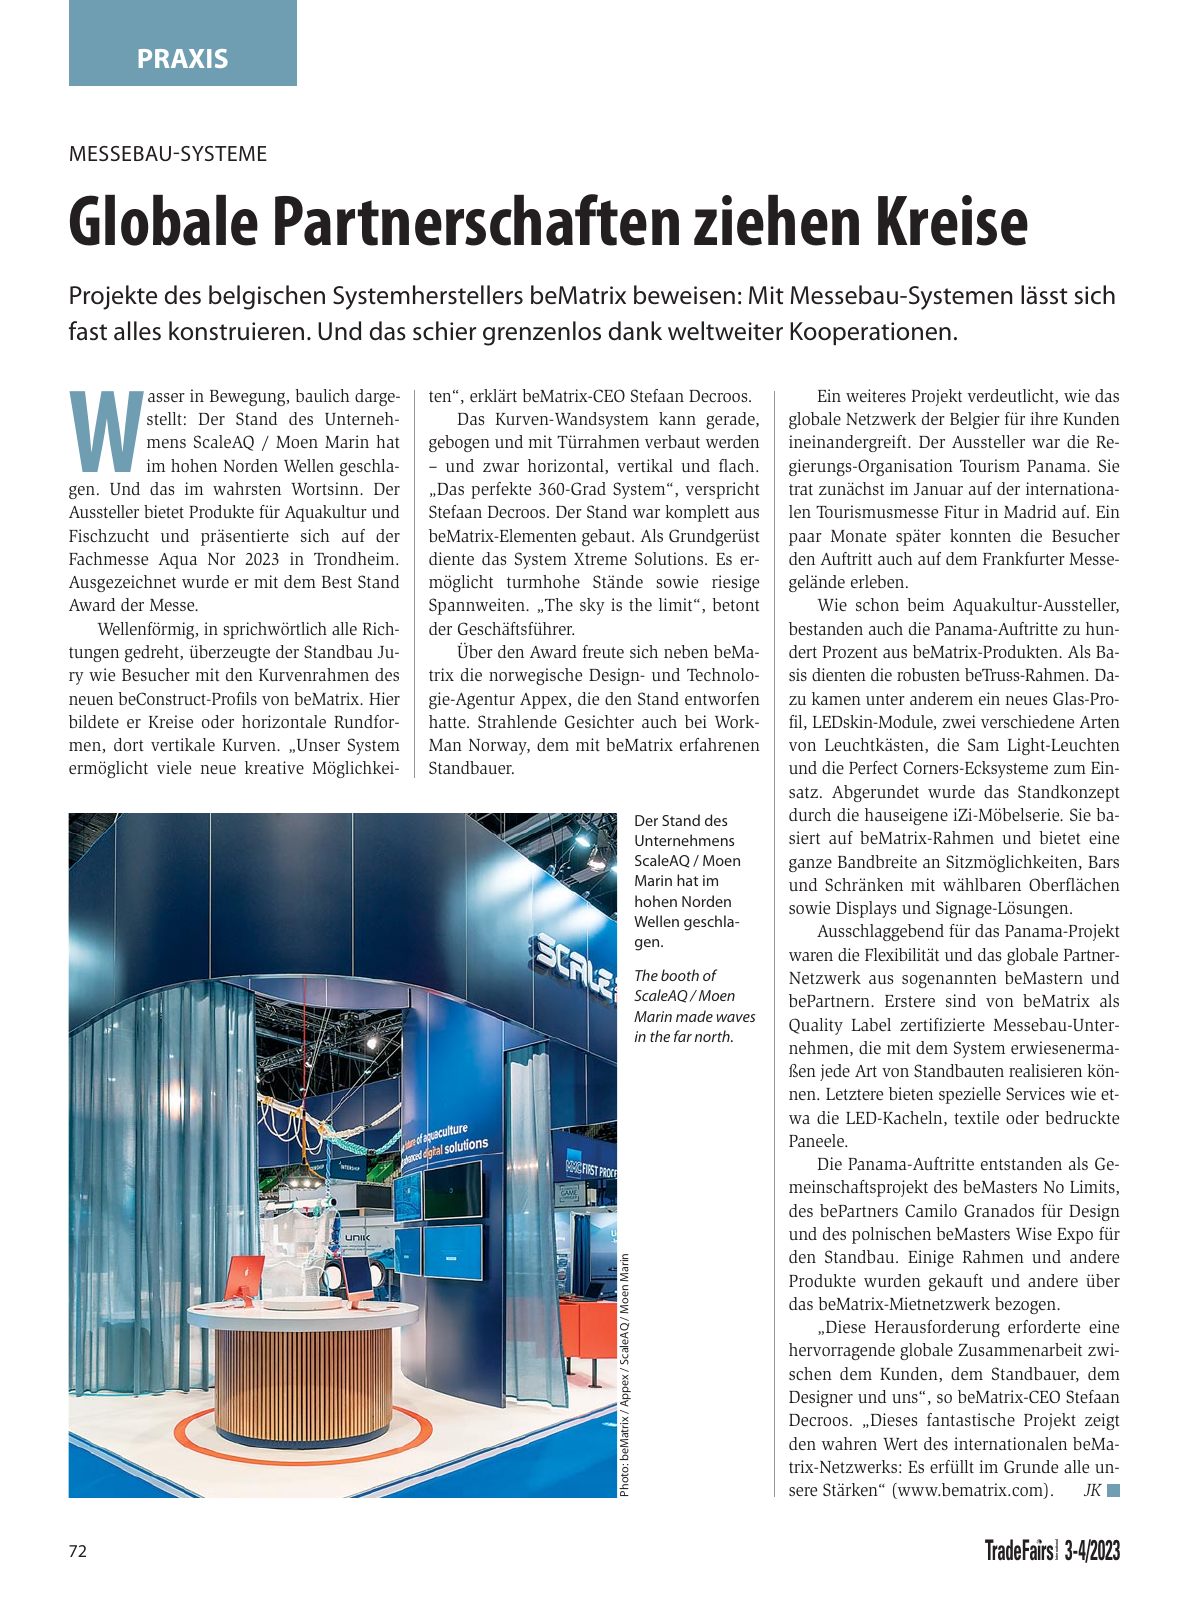 Vorschau TFI Trade-Fairs-International 03/2023 Seite 72